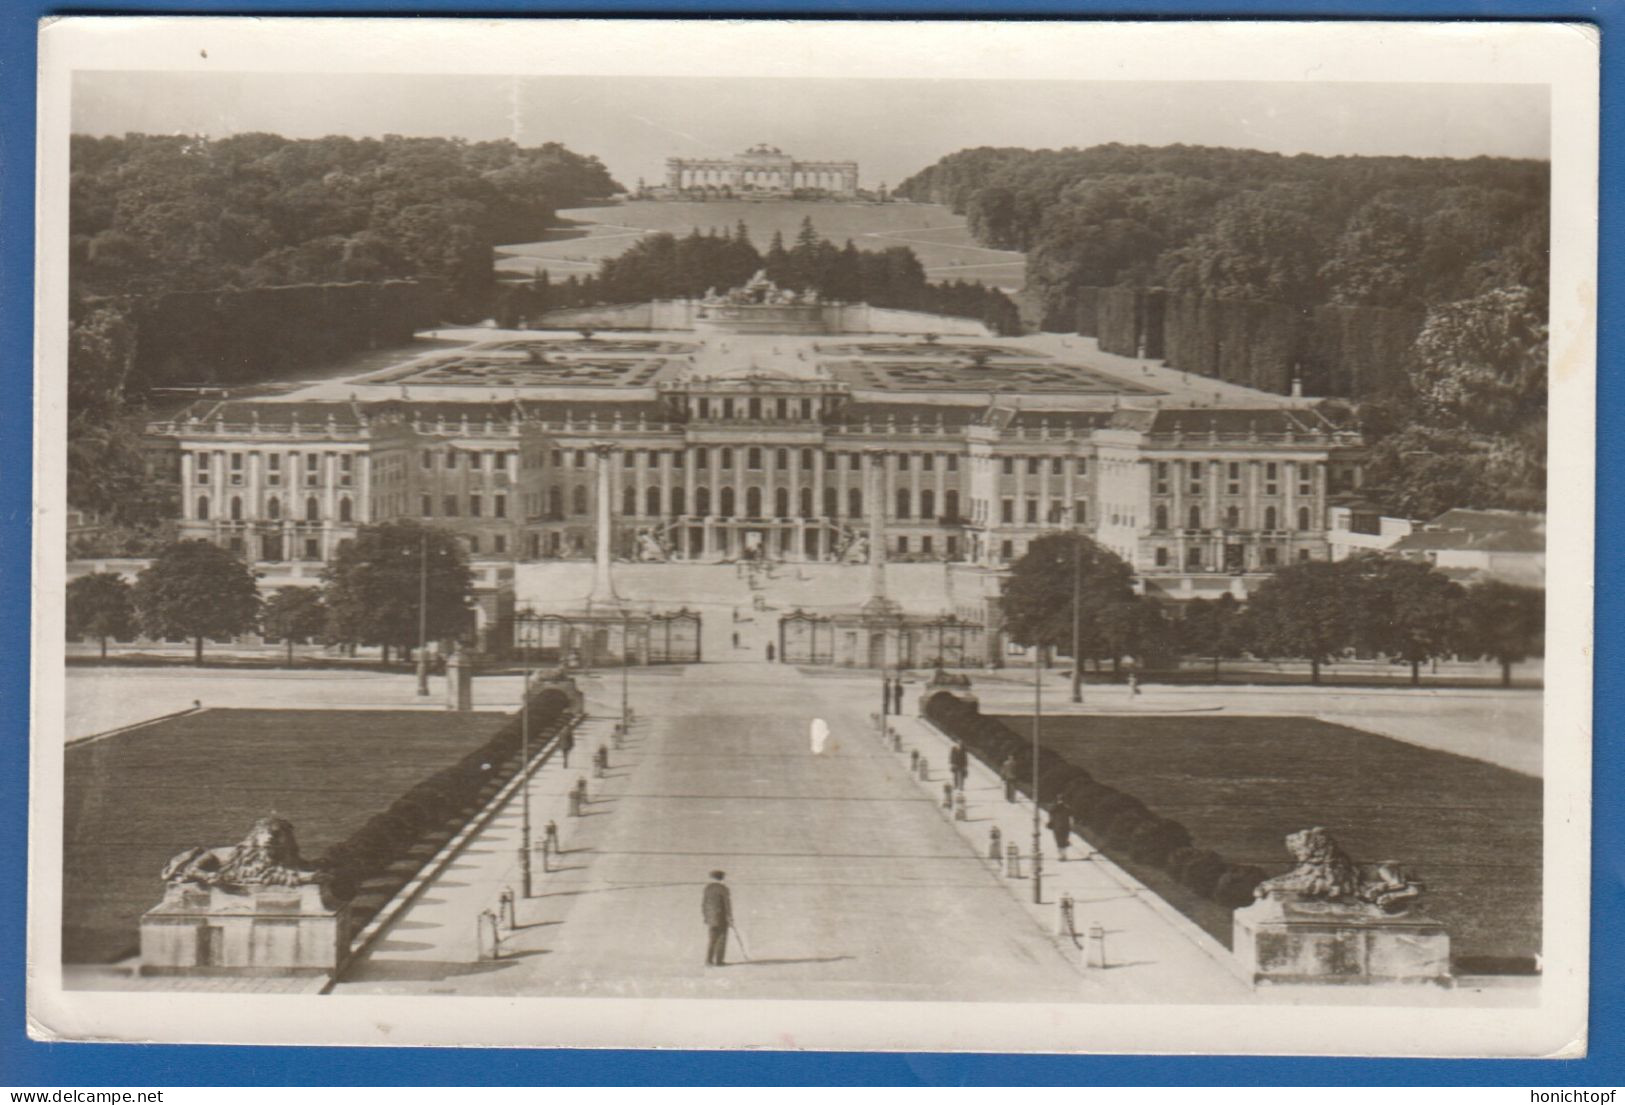 Österreich; Wien; Belvedere; 1943 - Schönbrunn Palace